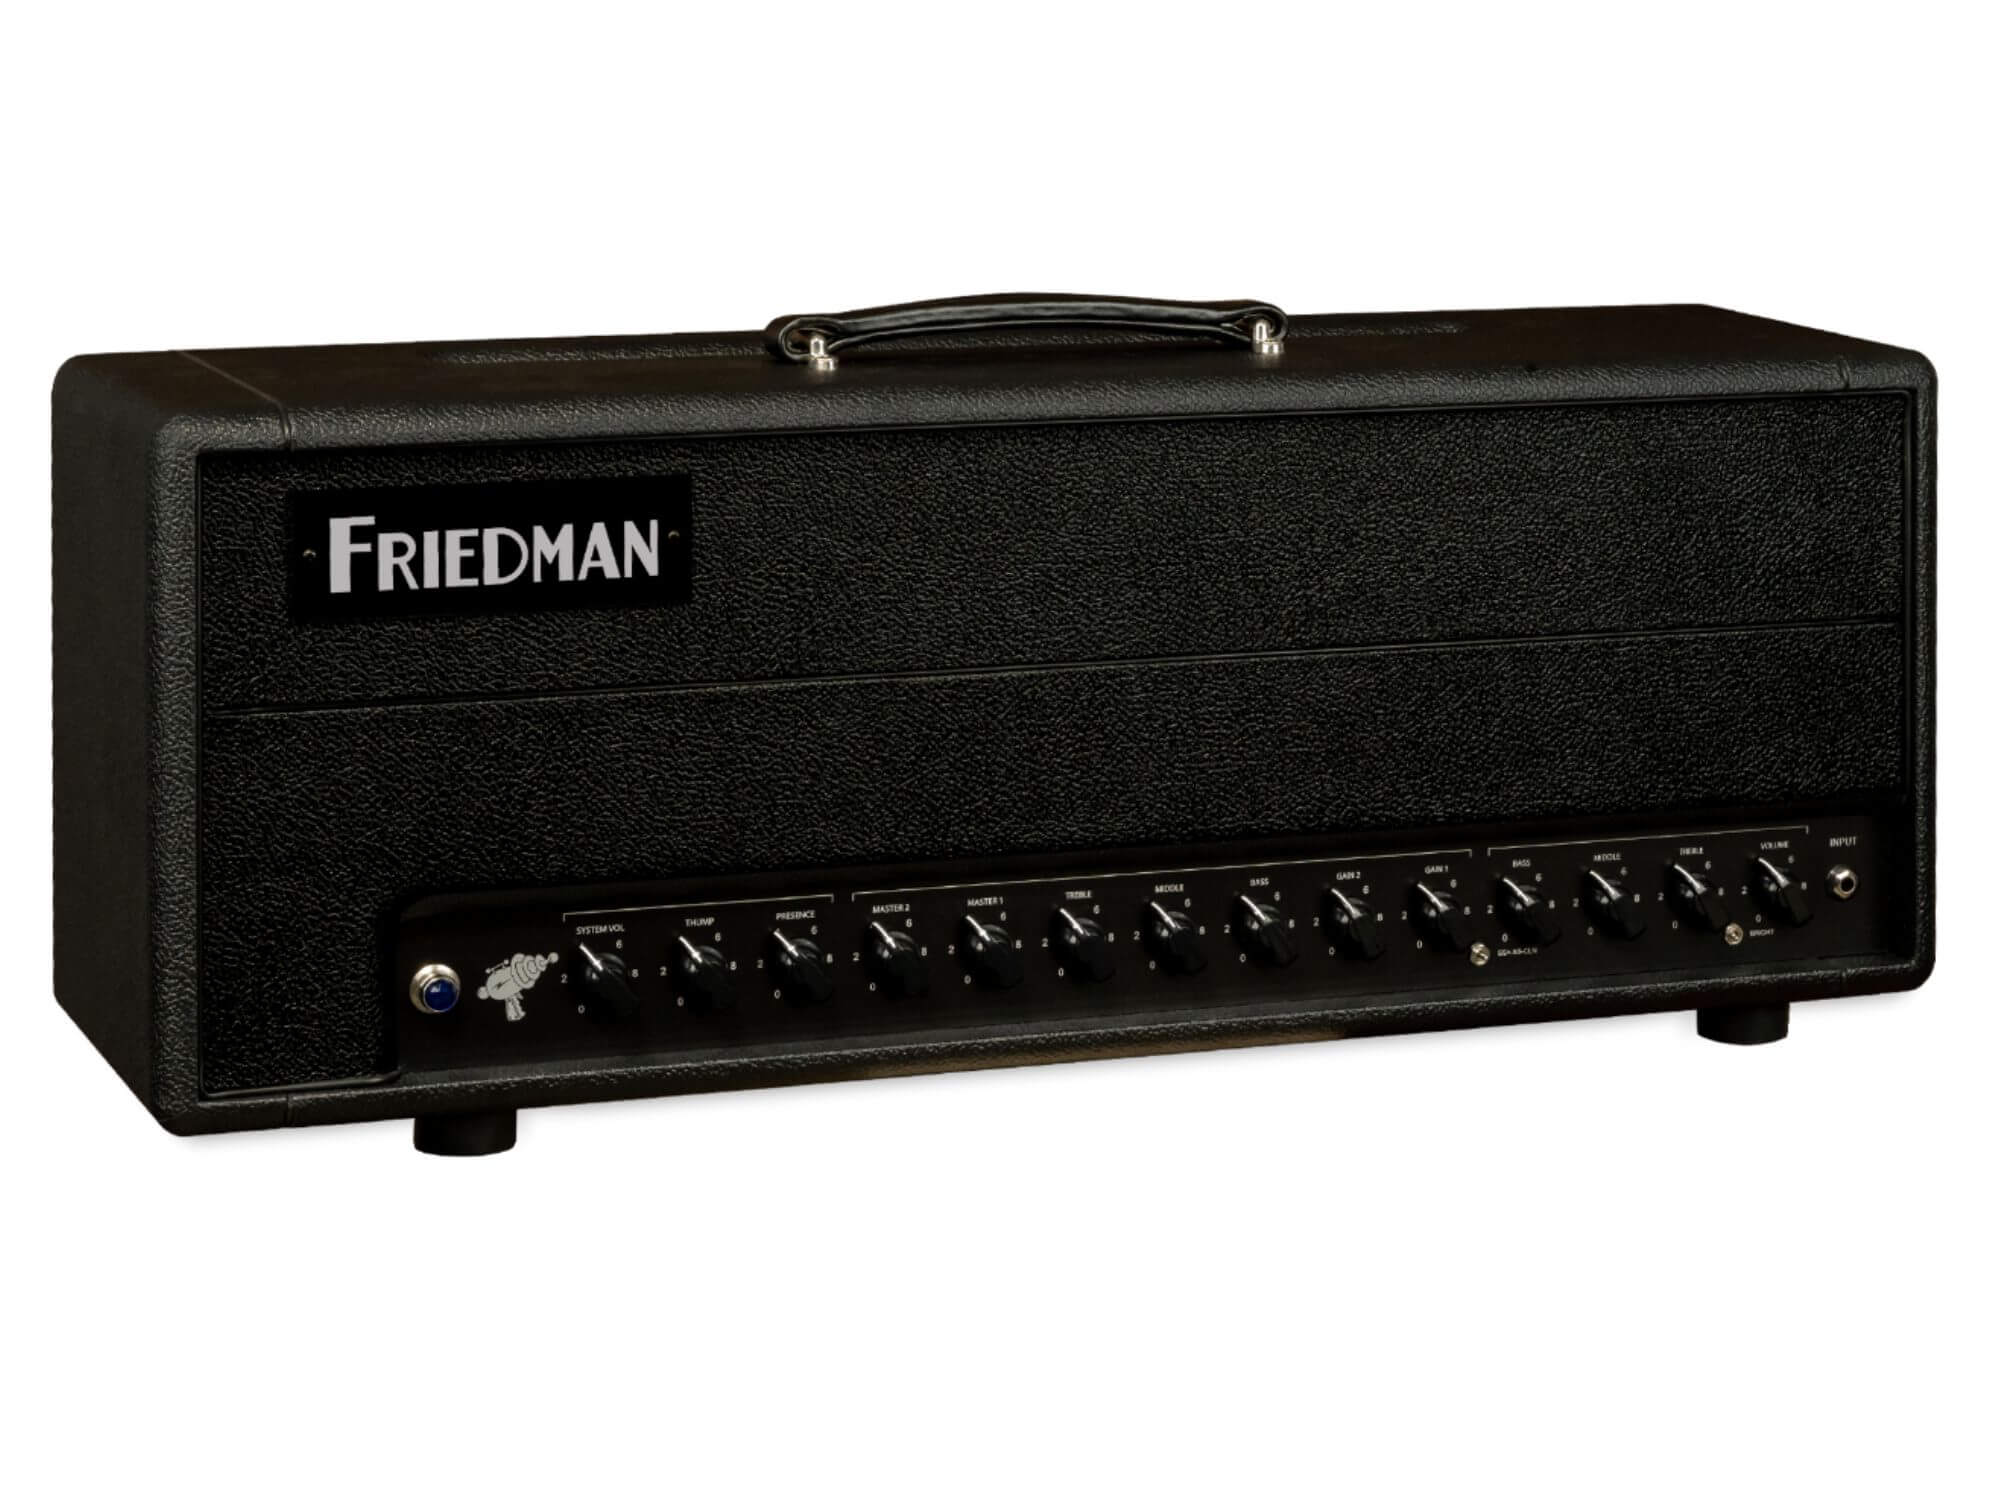 Friedman SS100-v2